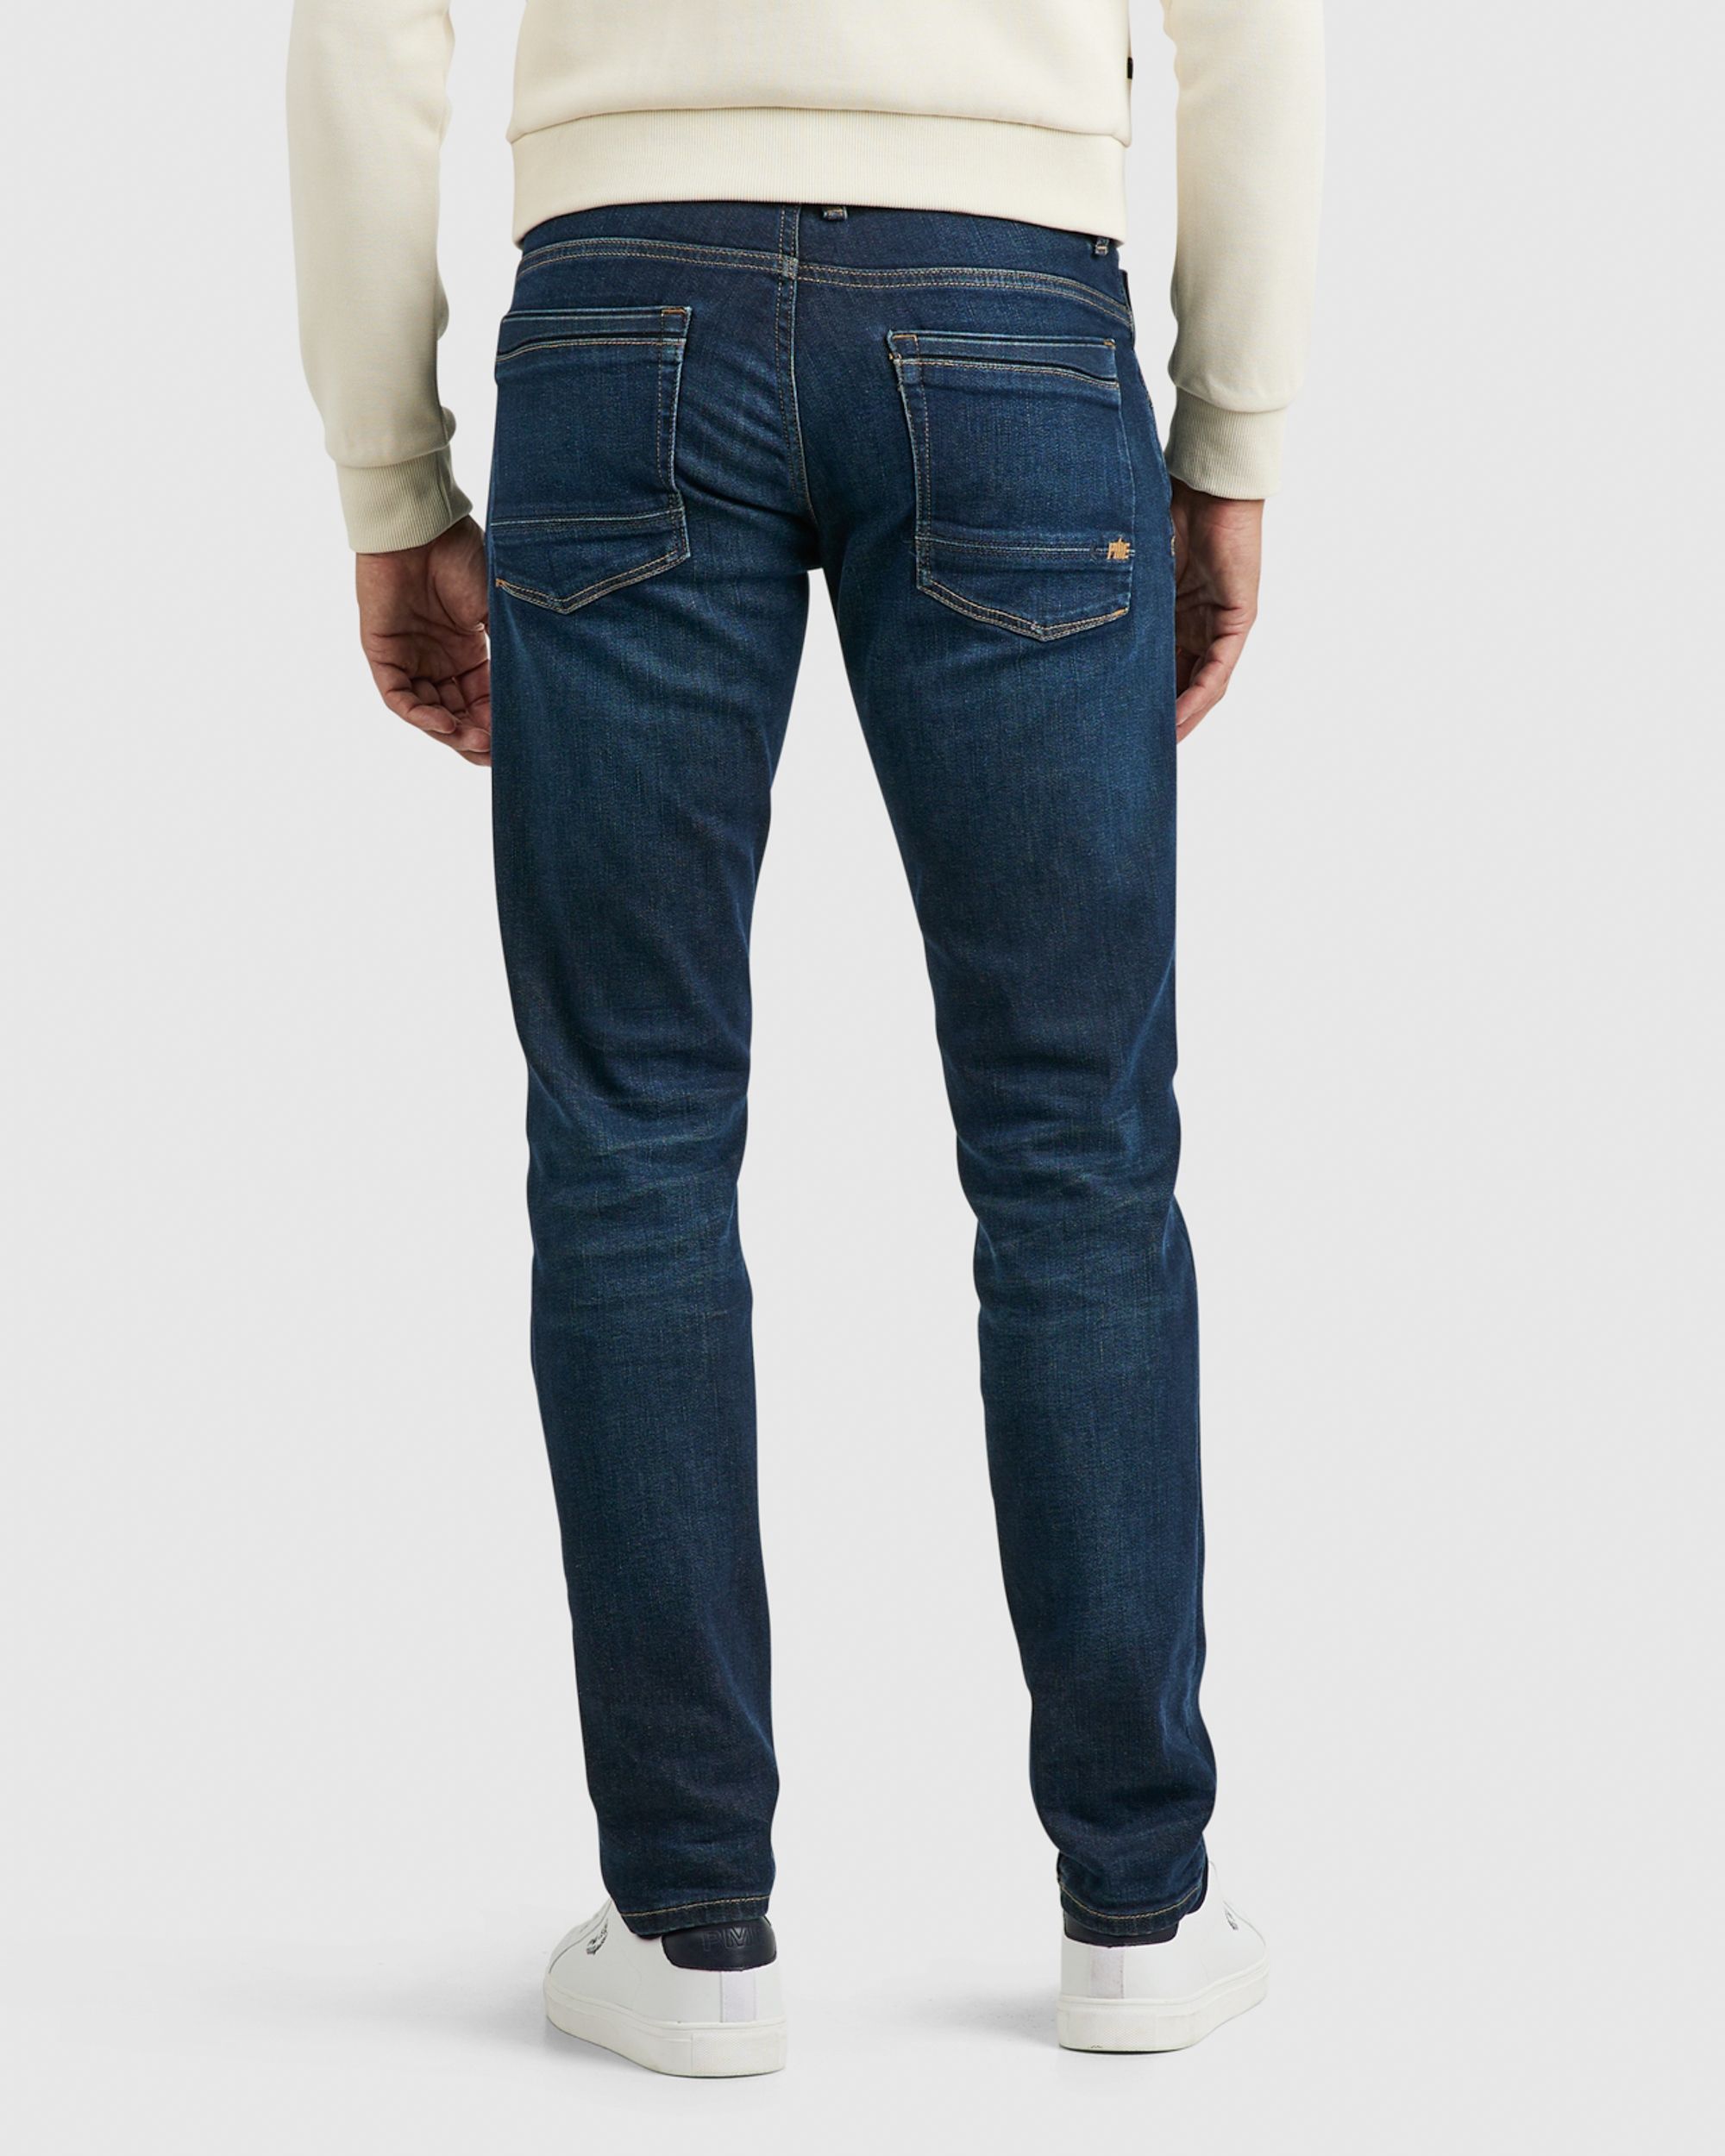 PME Legend Skyrak RIB Jeans Blauw 081966-001-30/30